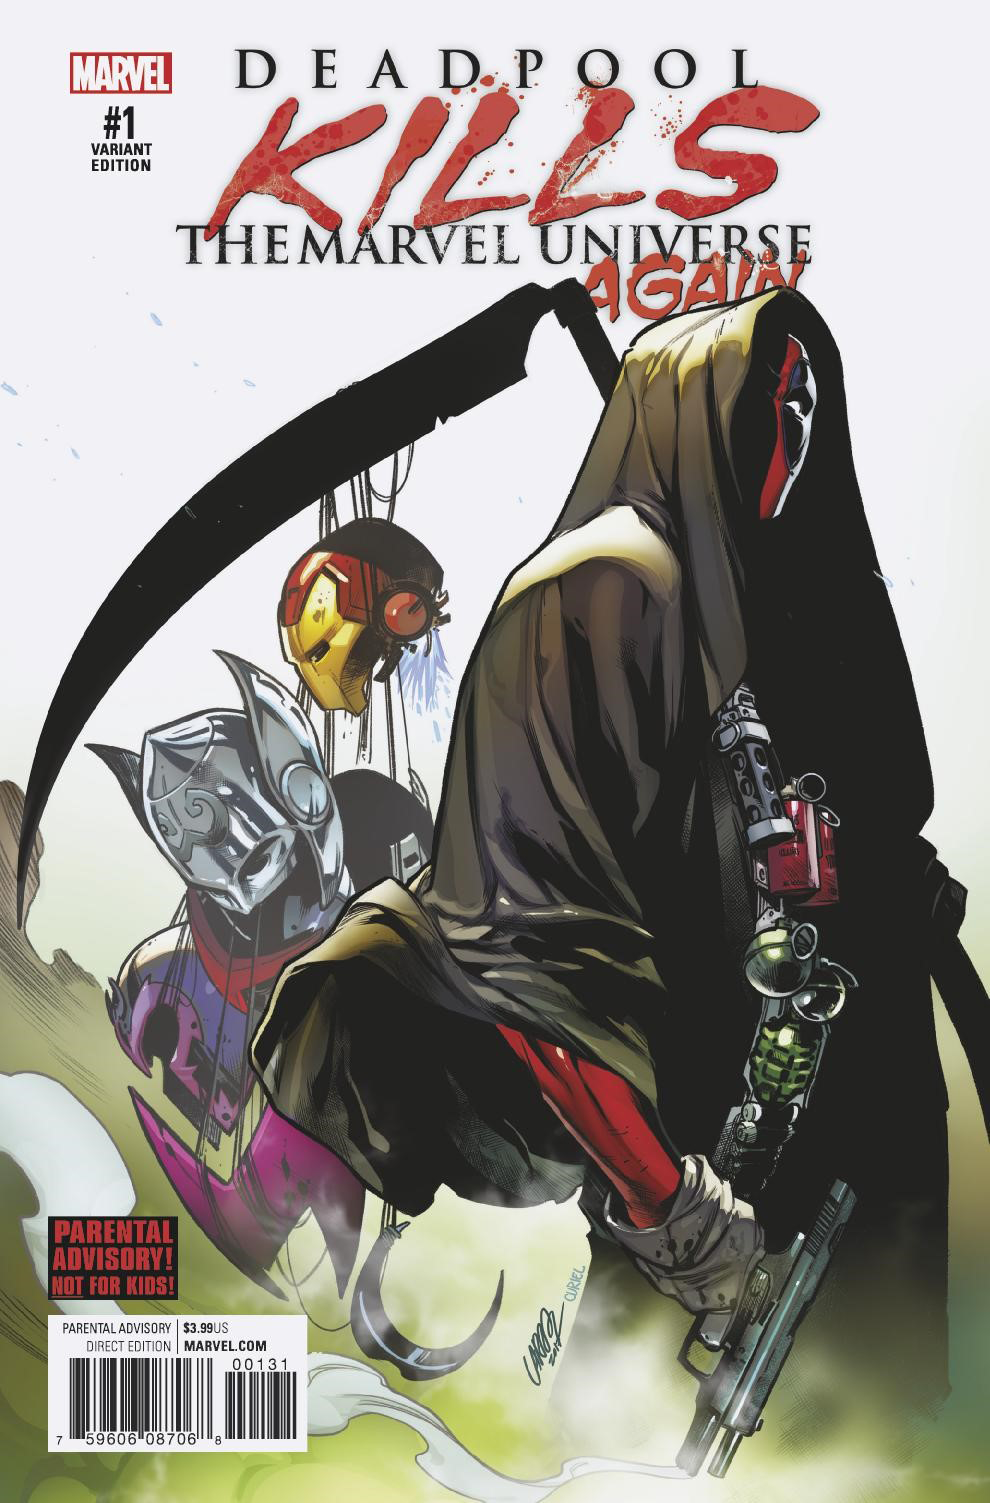 May170821 Deadpool Kills Marvel Universe Again 1 Of 5